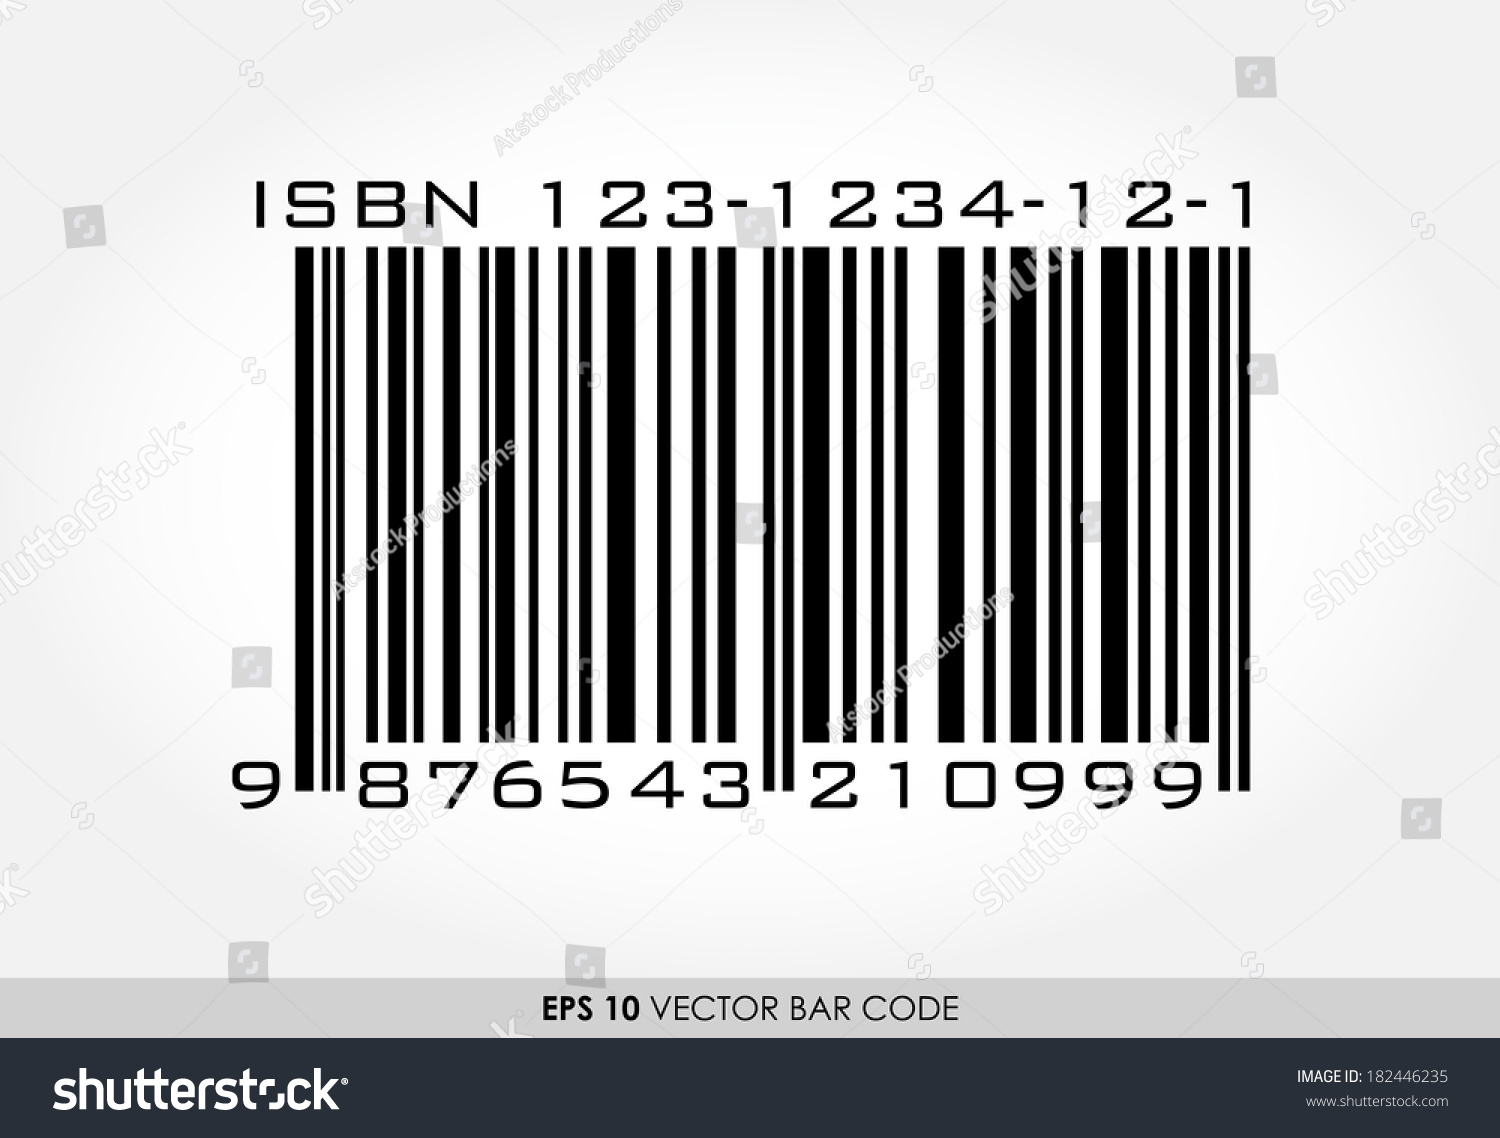 Image Vectorielle De Stock De Code Barres Isbn Pour Livres